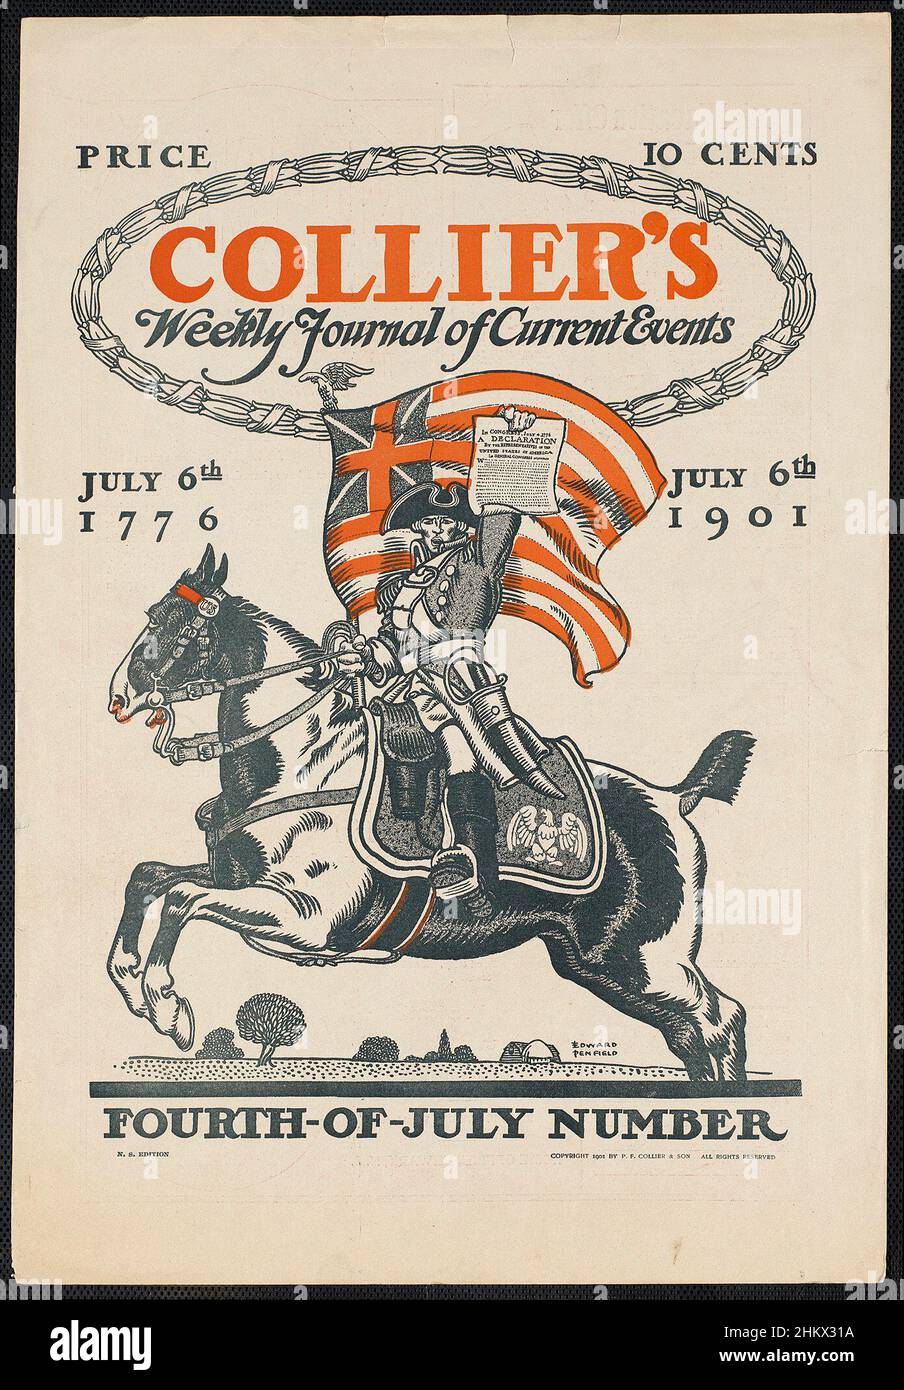 El diario semanal de Collier de los eventos actuales, número del 4 de julio. 6th de julio de 1776, 6th 1901 de julio, por Edward Penfield (1866-1925) Foto de stock